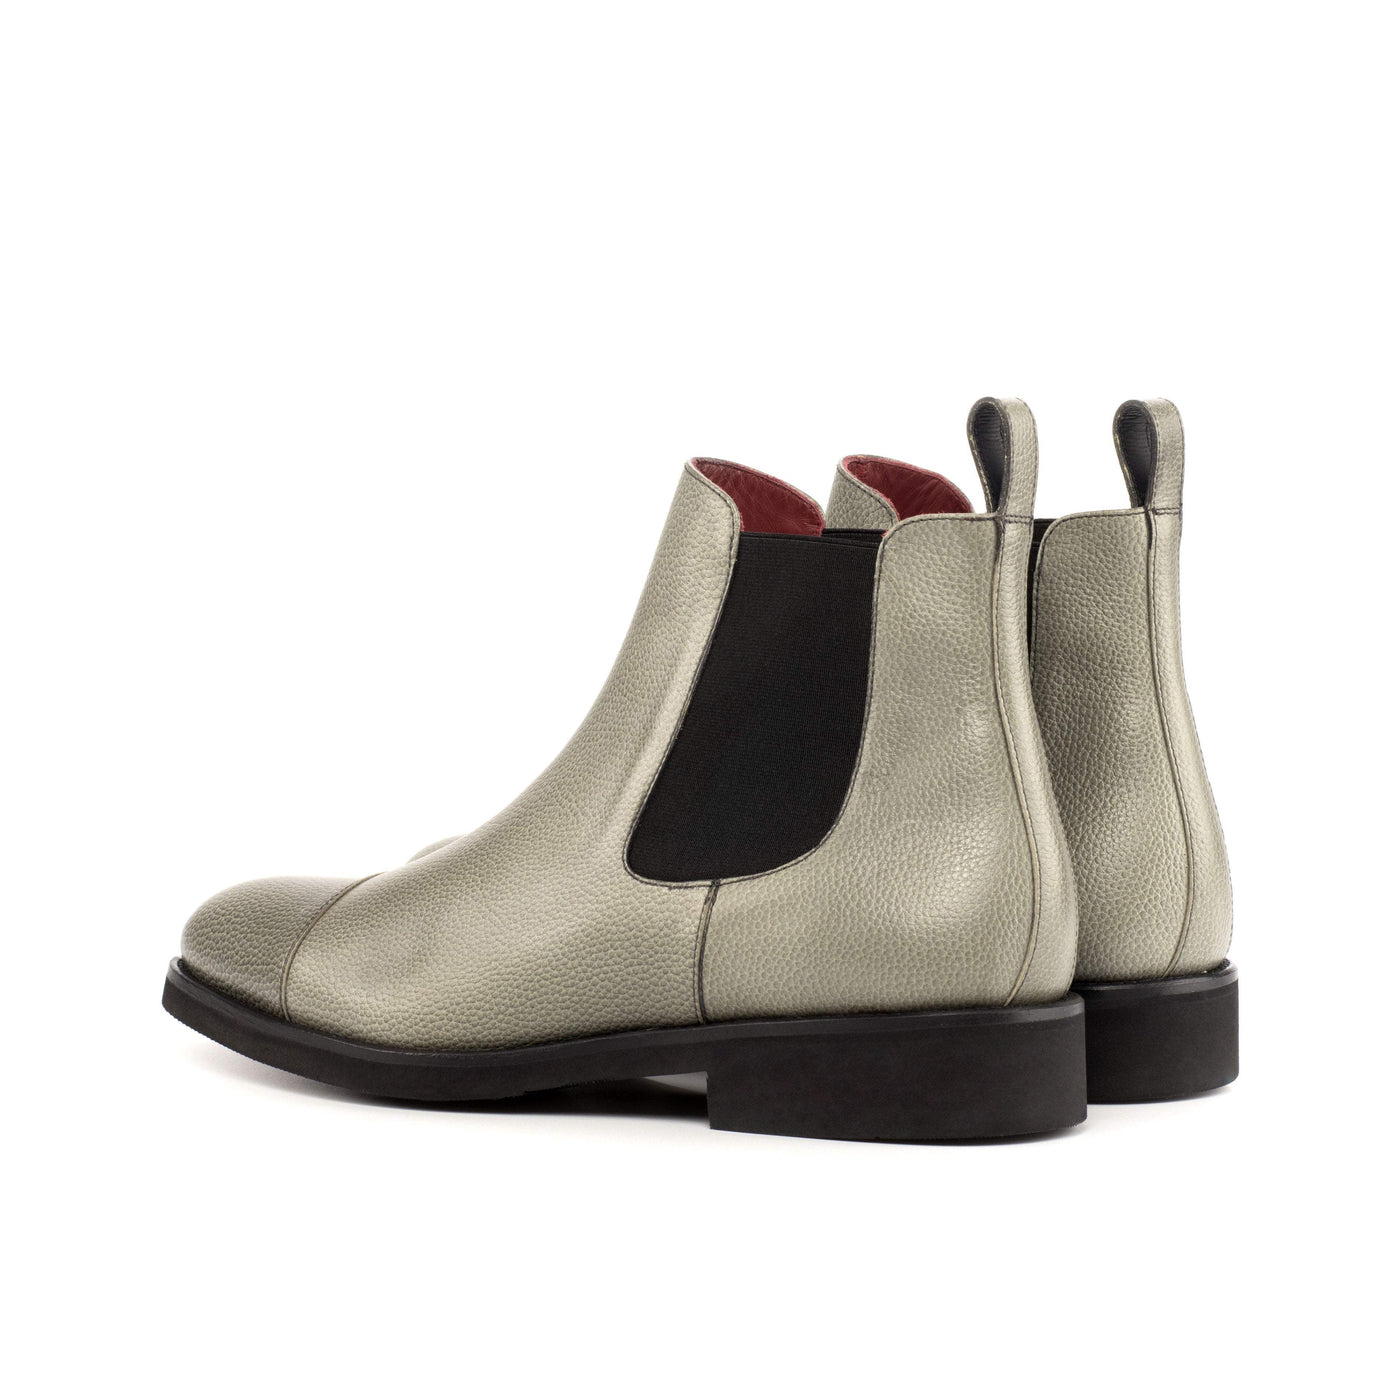 Men's Chelsea Boots Classic Leather Grey 4511 4- MERRIMIUM